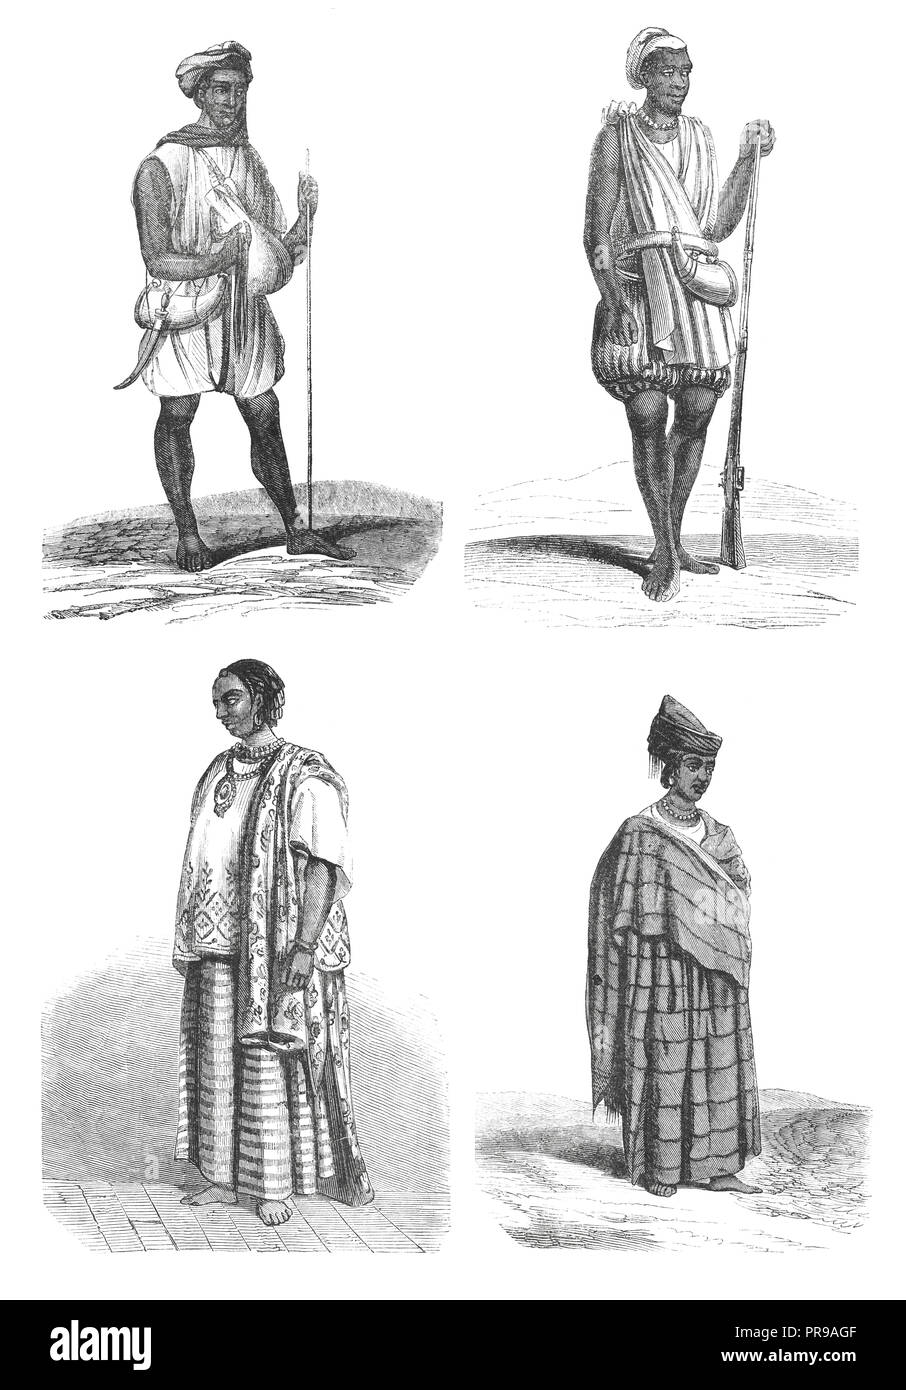 Illustration von Joloffs oder Wolof Kostümen aus dem 19. Jahrhundert - Zeichnungen von Nousveaux. Originalkunstwerke in Le Magasin Pittoresque Stockfoto